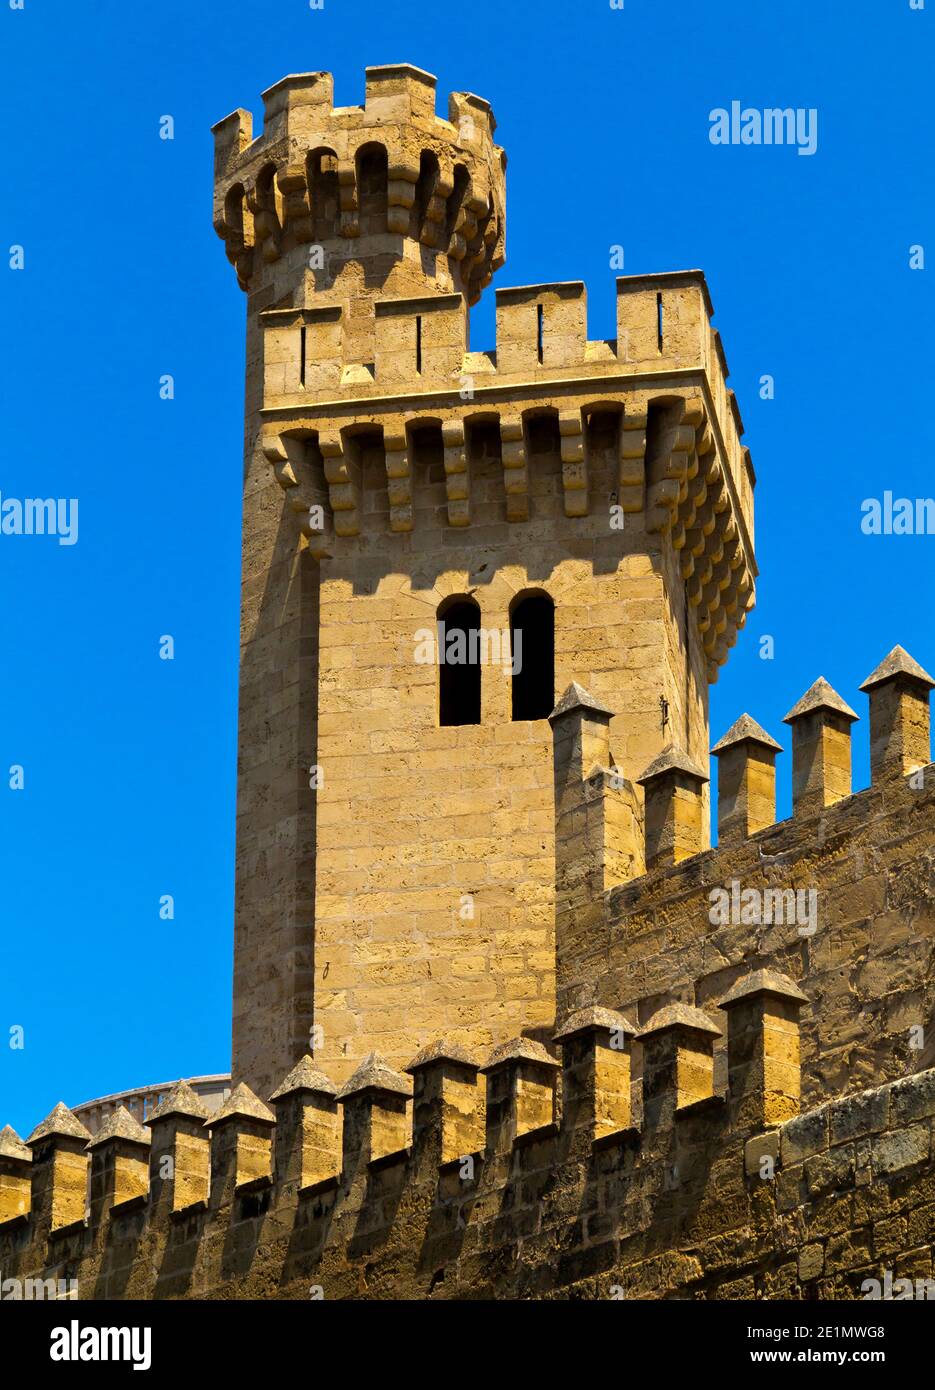 Tour à créneaux sur le Palau d'Almudaina un fort islamique converti Dans un palais royal au XIIIe siècle à Palma Majorque Iles Baléares Espagne Banque D'Images